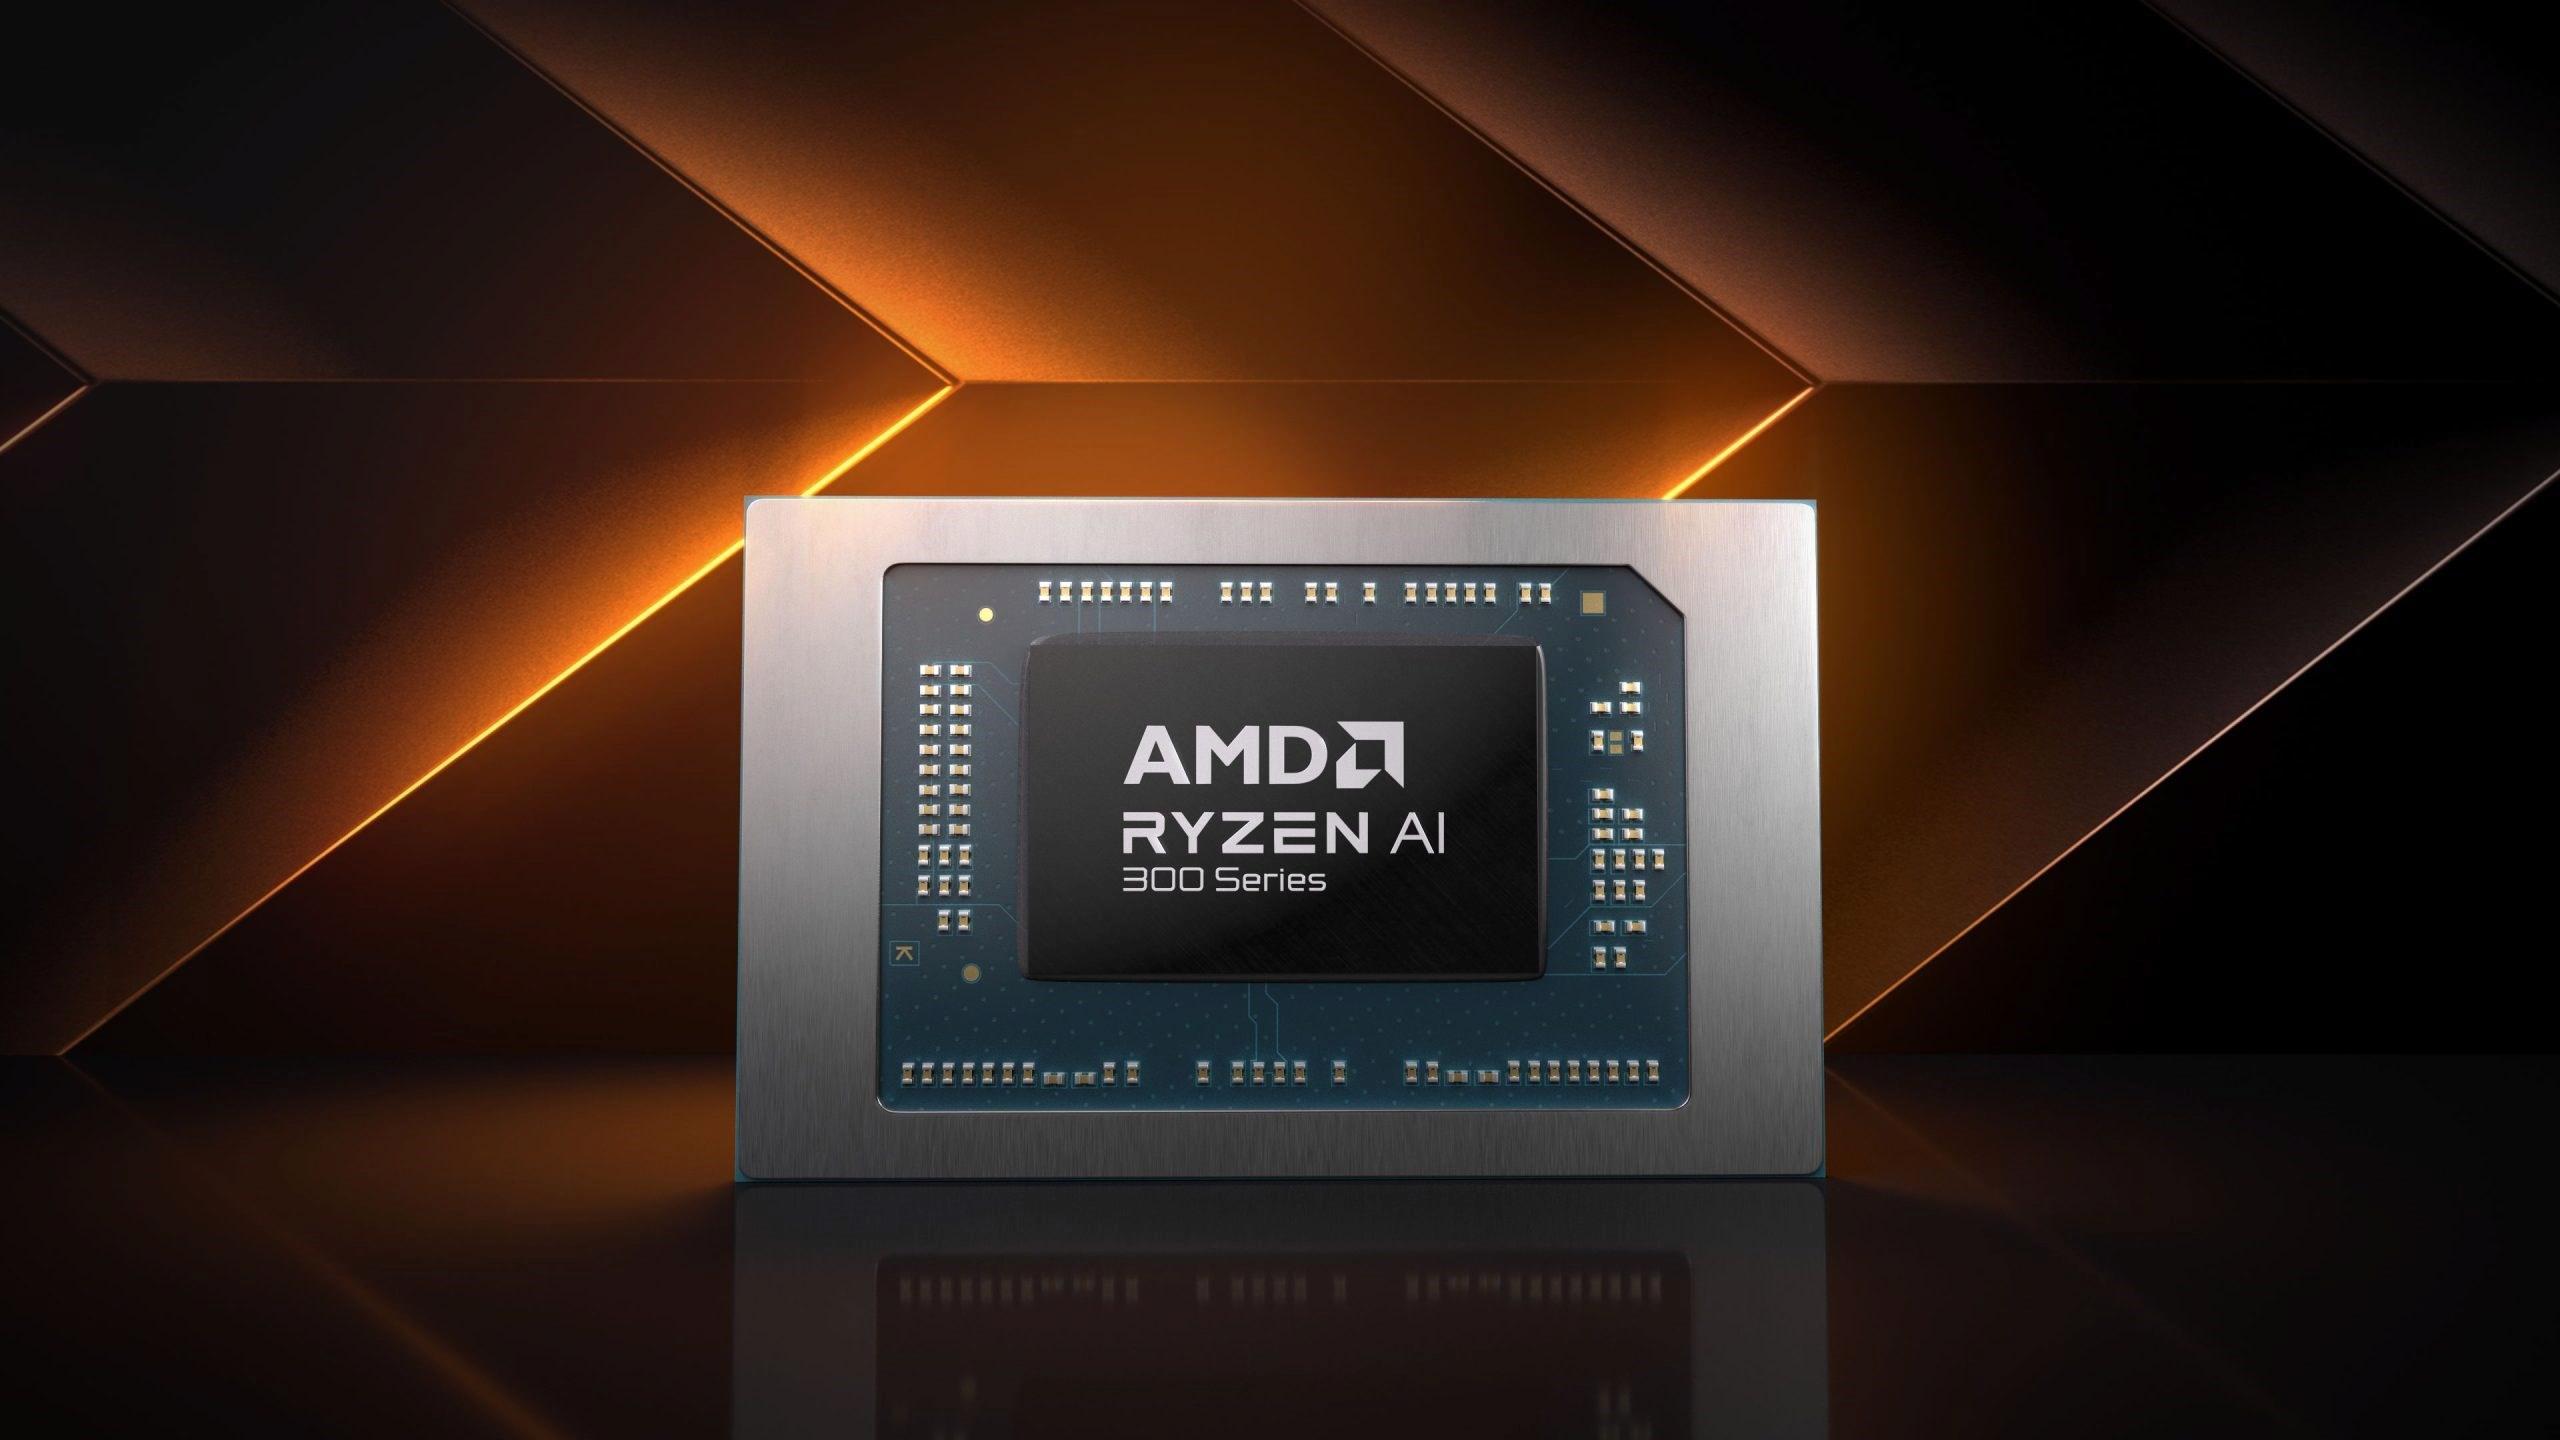 AMD Ryzen AI 300 serisi işlemciler tanıtıldı: Yapay zekada en güçlüsü